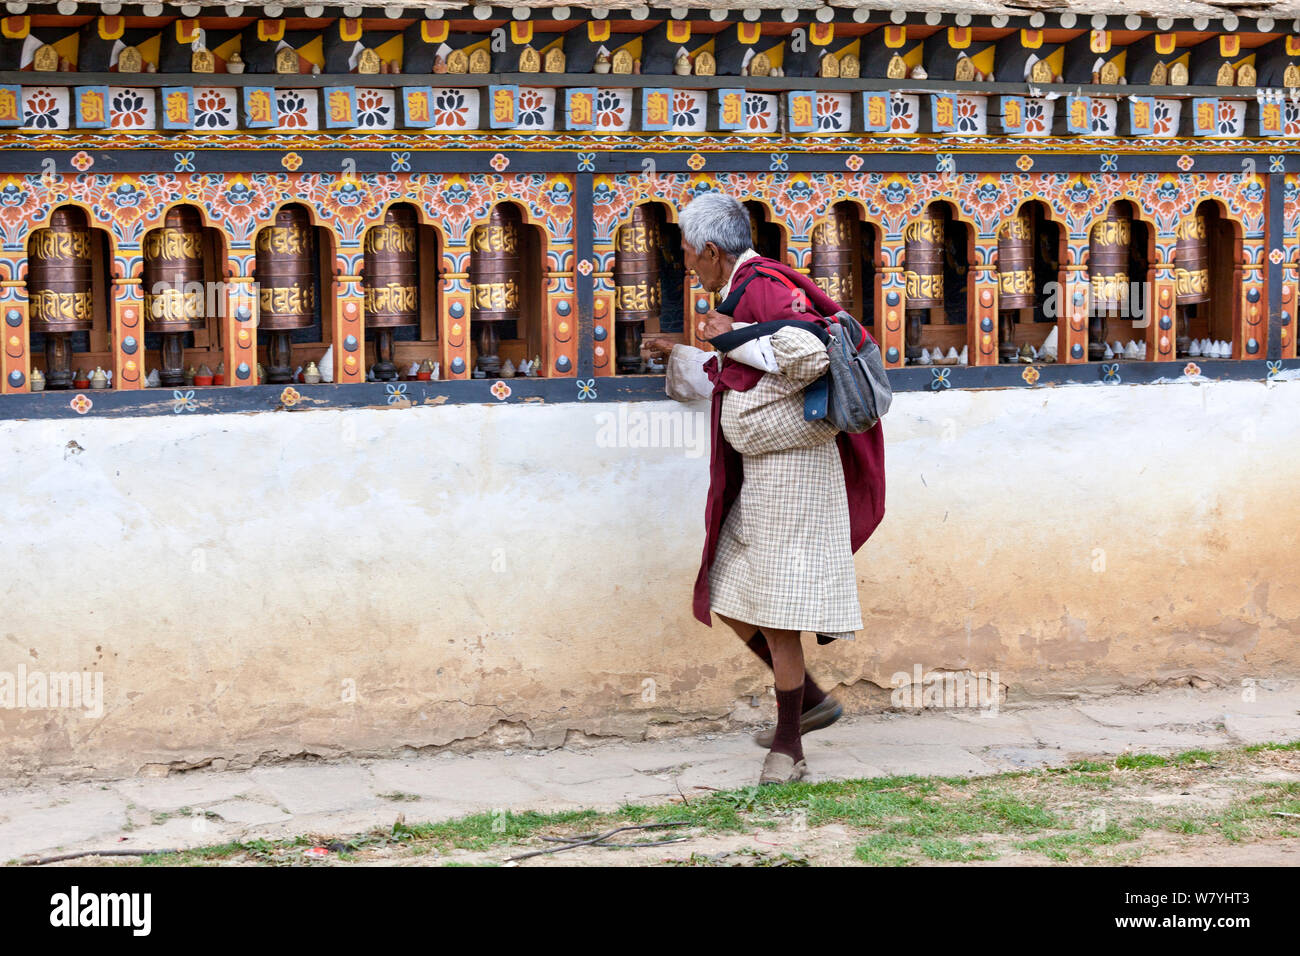 Man spinning prayer wheels at Kyichu Lhakhang in Paro, Bhutan, October 2014. Stock Photo